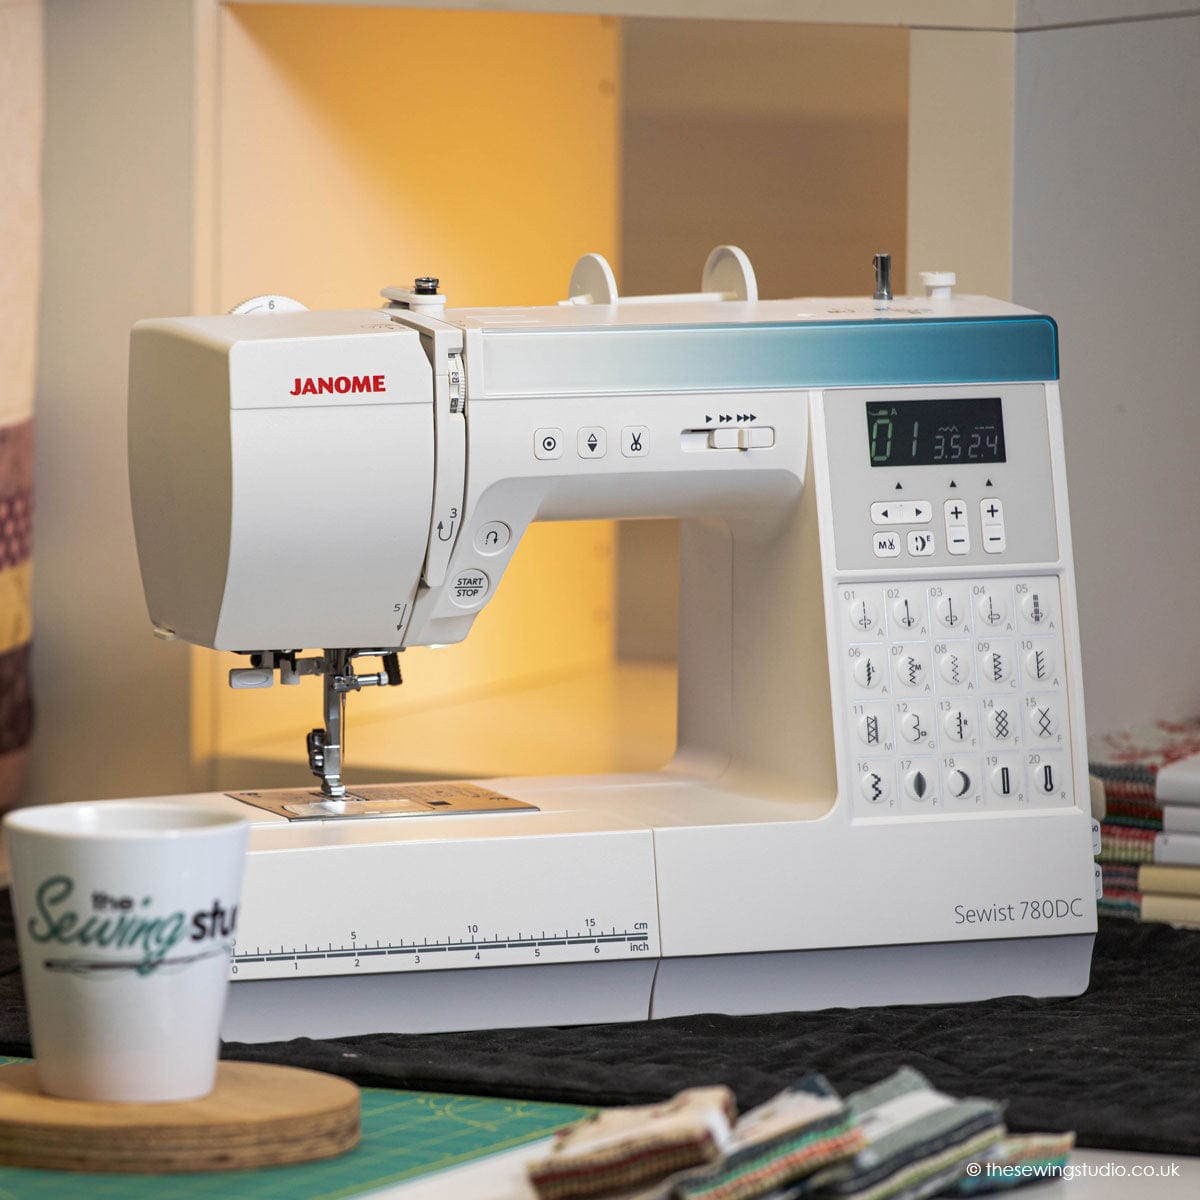 Janome Sewist 780DC Sewing Machine Lifestyle Photo